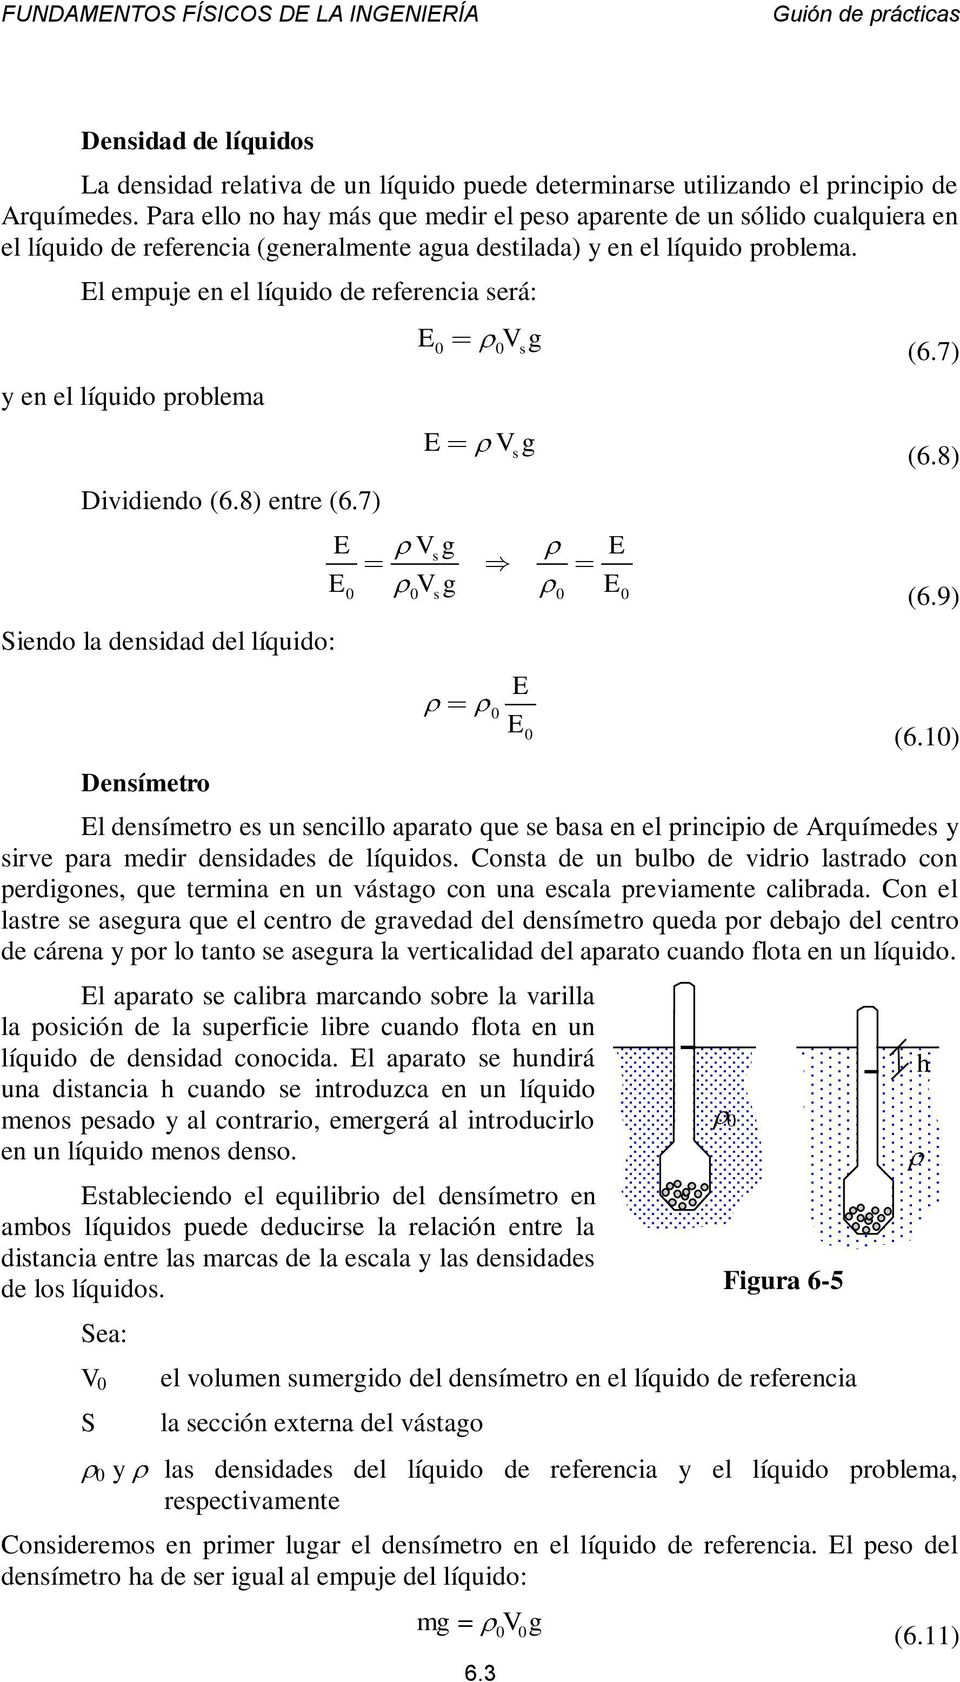 El empuje en el líquido de referencia será: y en el líquido problema Dividiendo (6.8) entre (6.7) Siendo la densidad del líquido: Densímetro E s E 6.3 E Vsg E E E s s E E (6.7) (6.8) (6.9) (6.